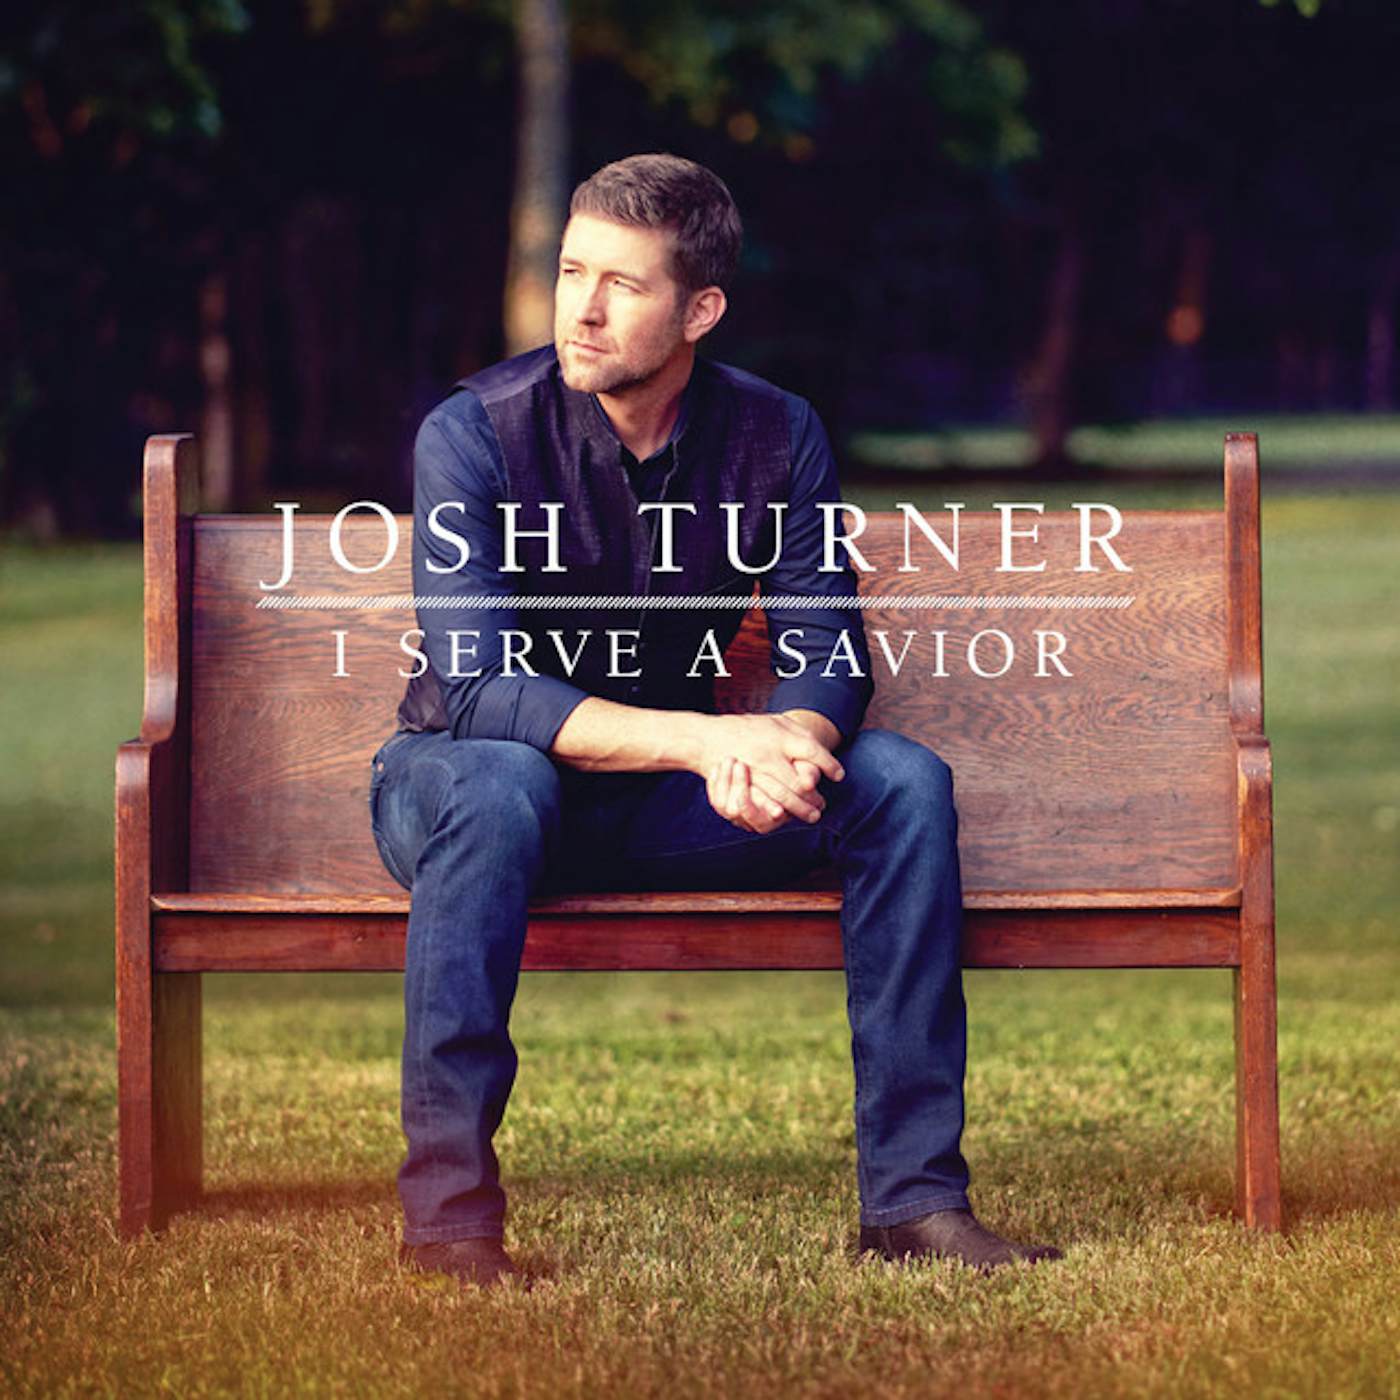 Josh Turner I Serve A Savior Vinyl Record